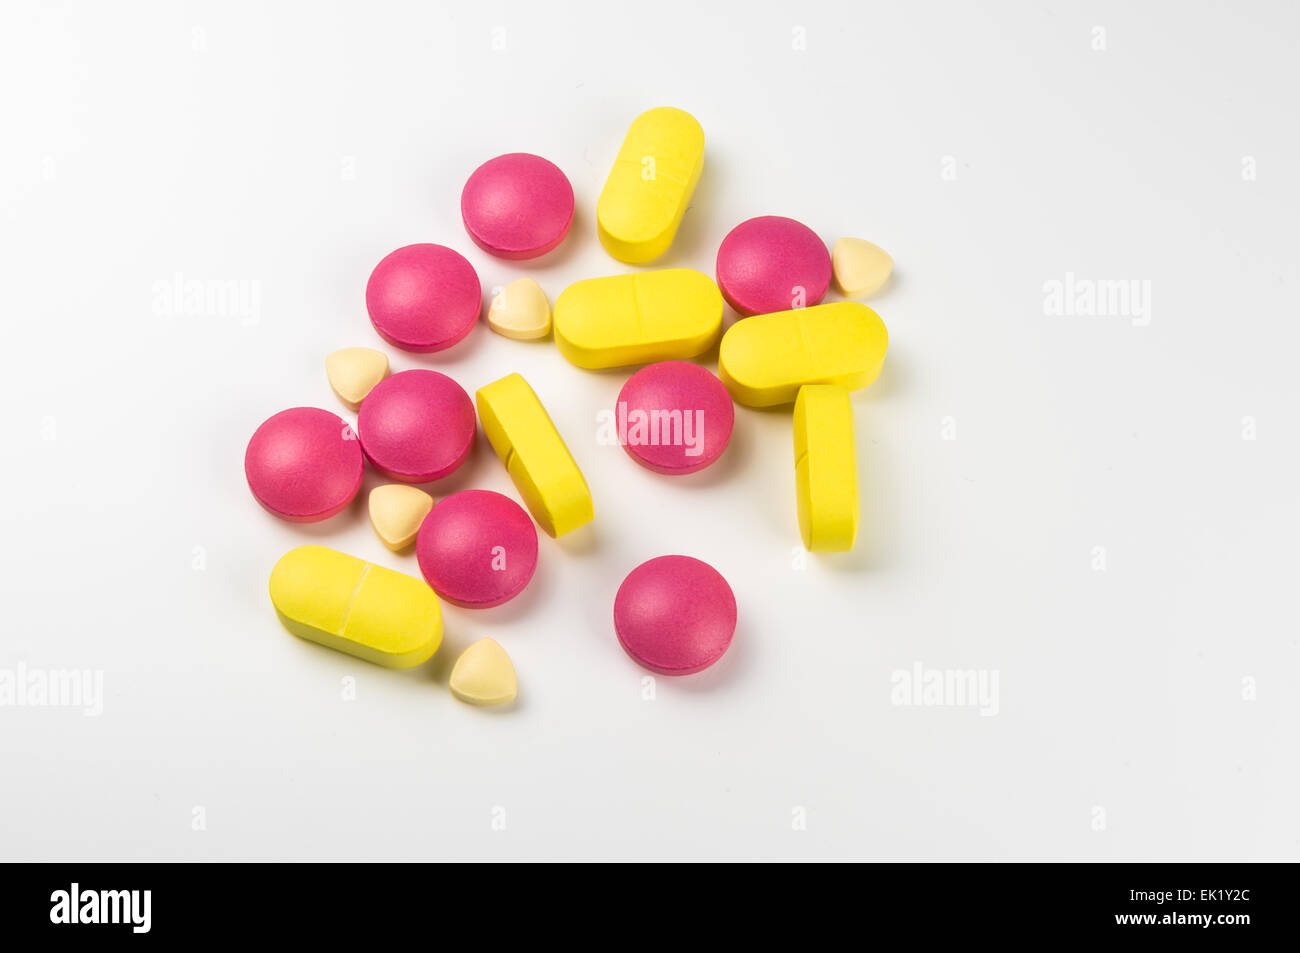 Medikamente und Pillen auf dem display Stockfoto